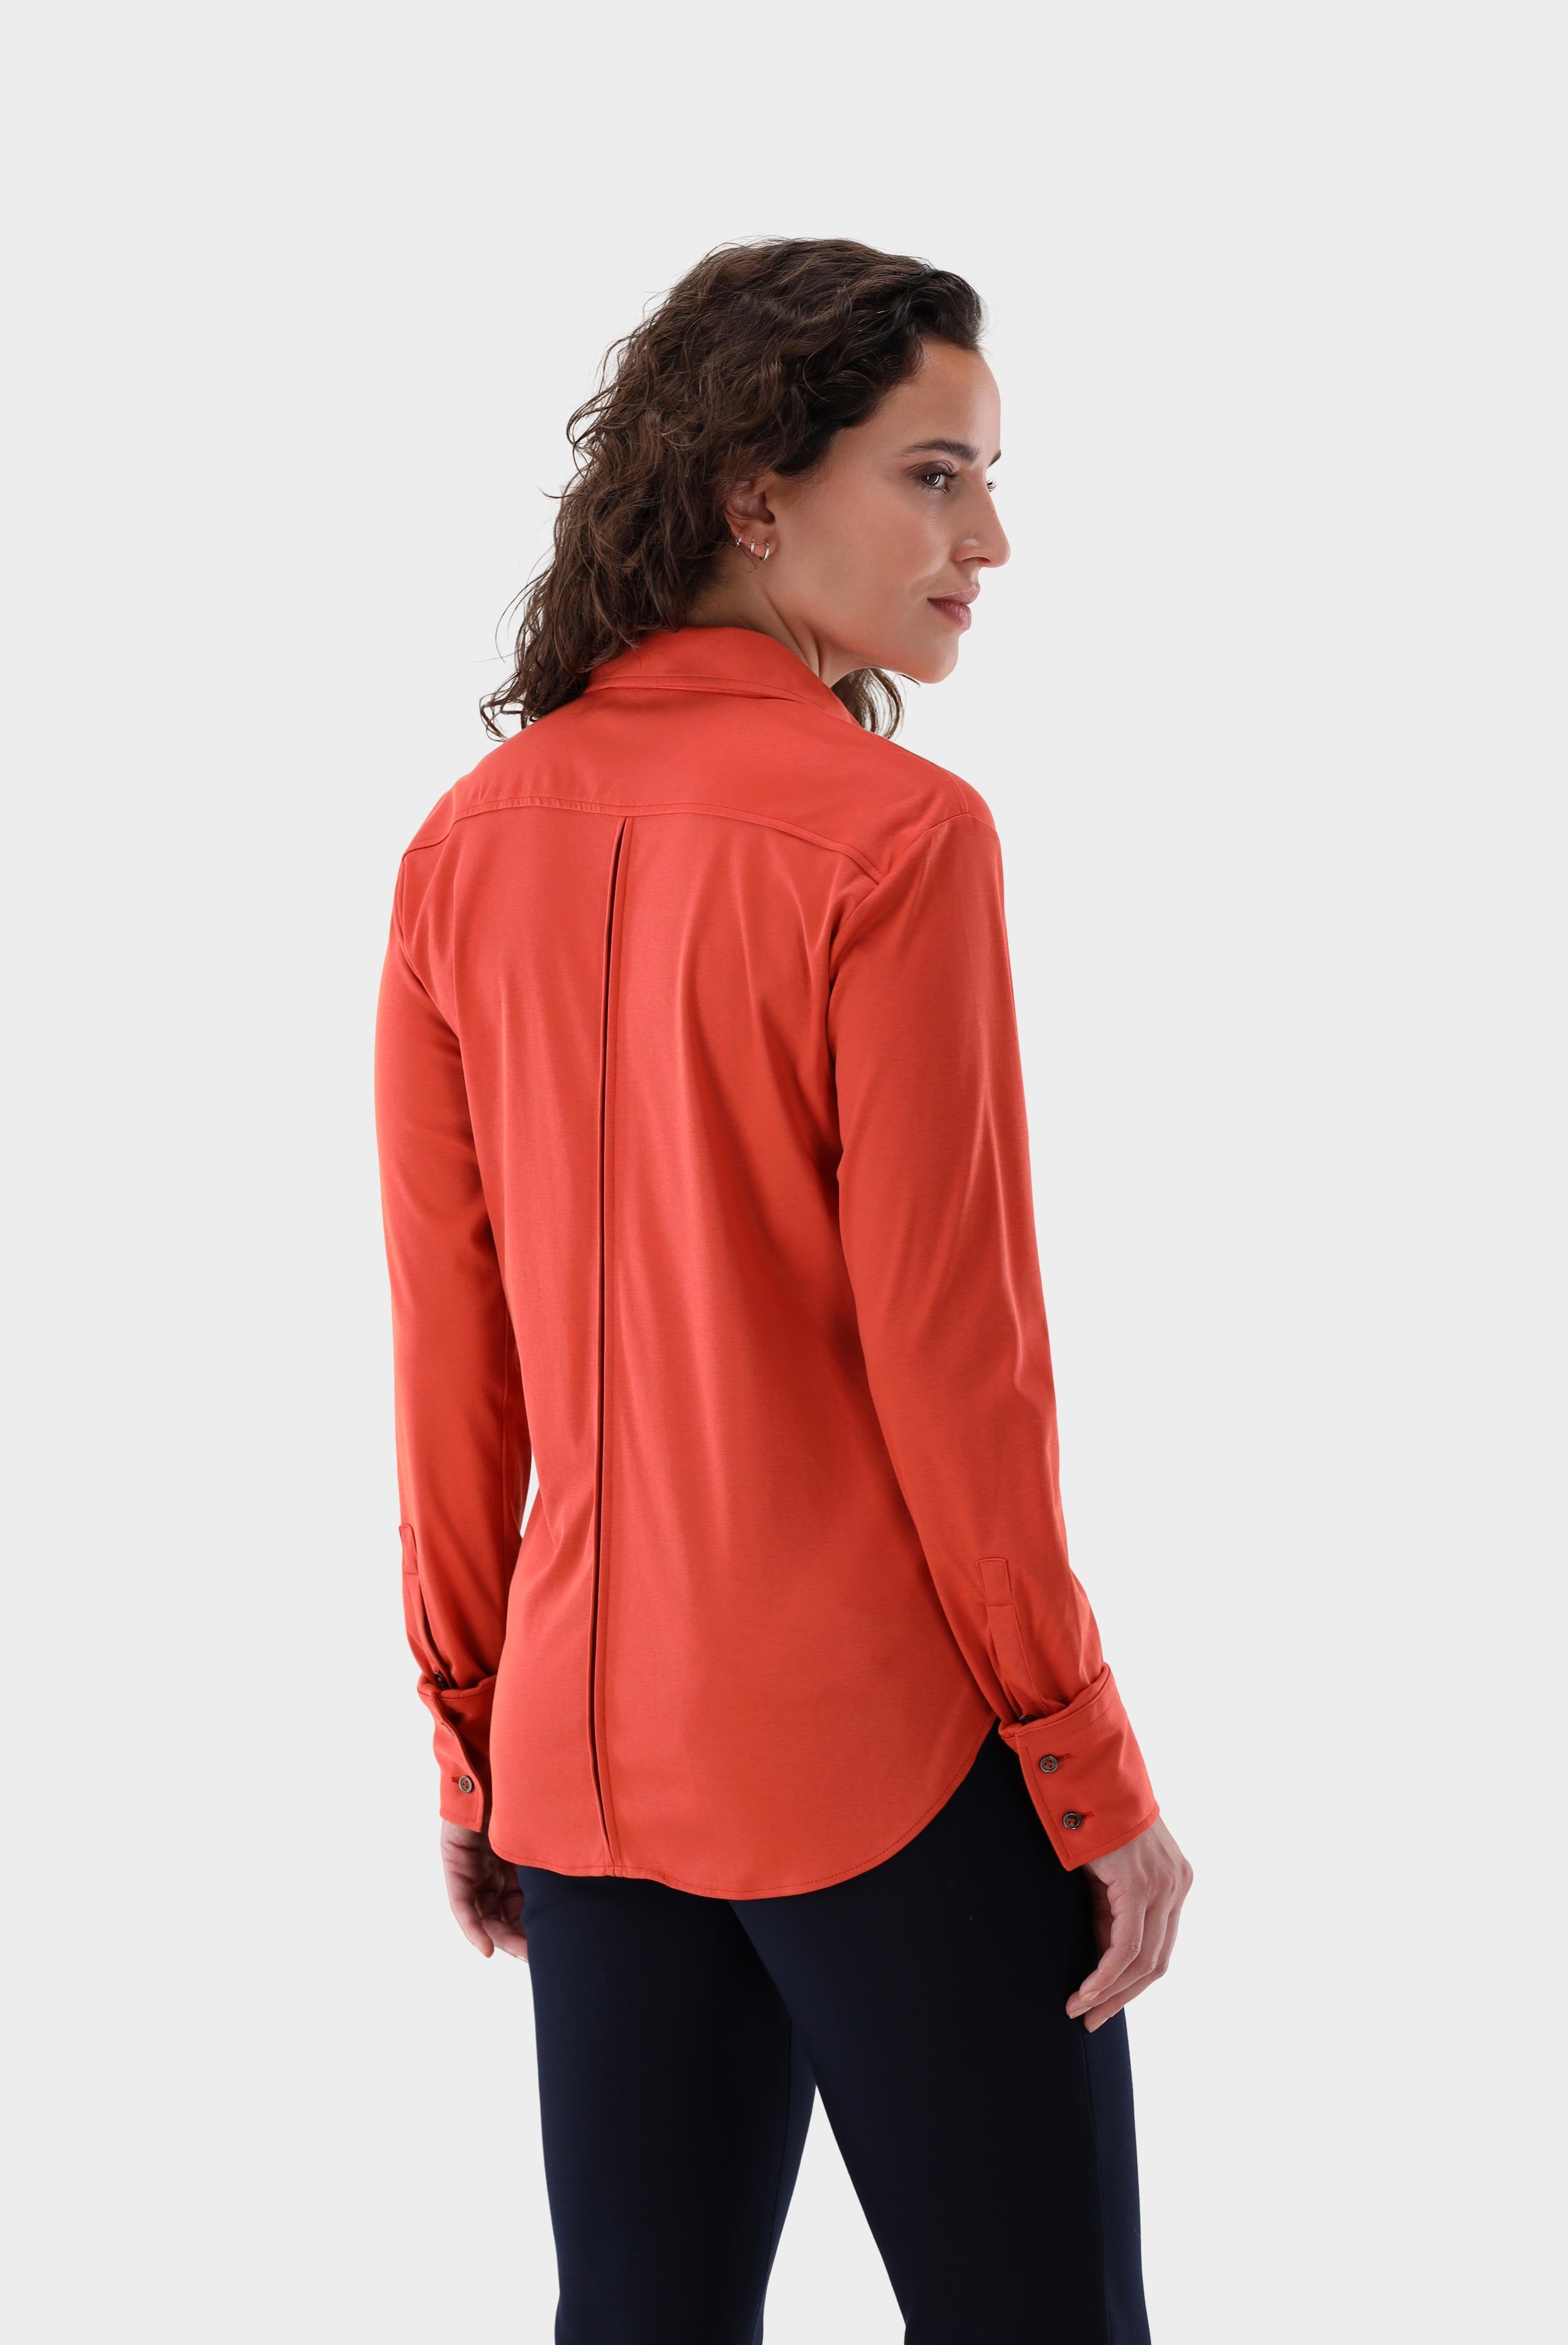 Casual Blusen+Taillierte Jersey Hemdbluse aus Schweizer Baumwolle+05.603Y..180031.360.36